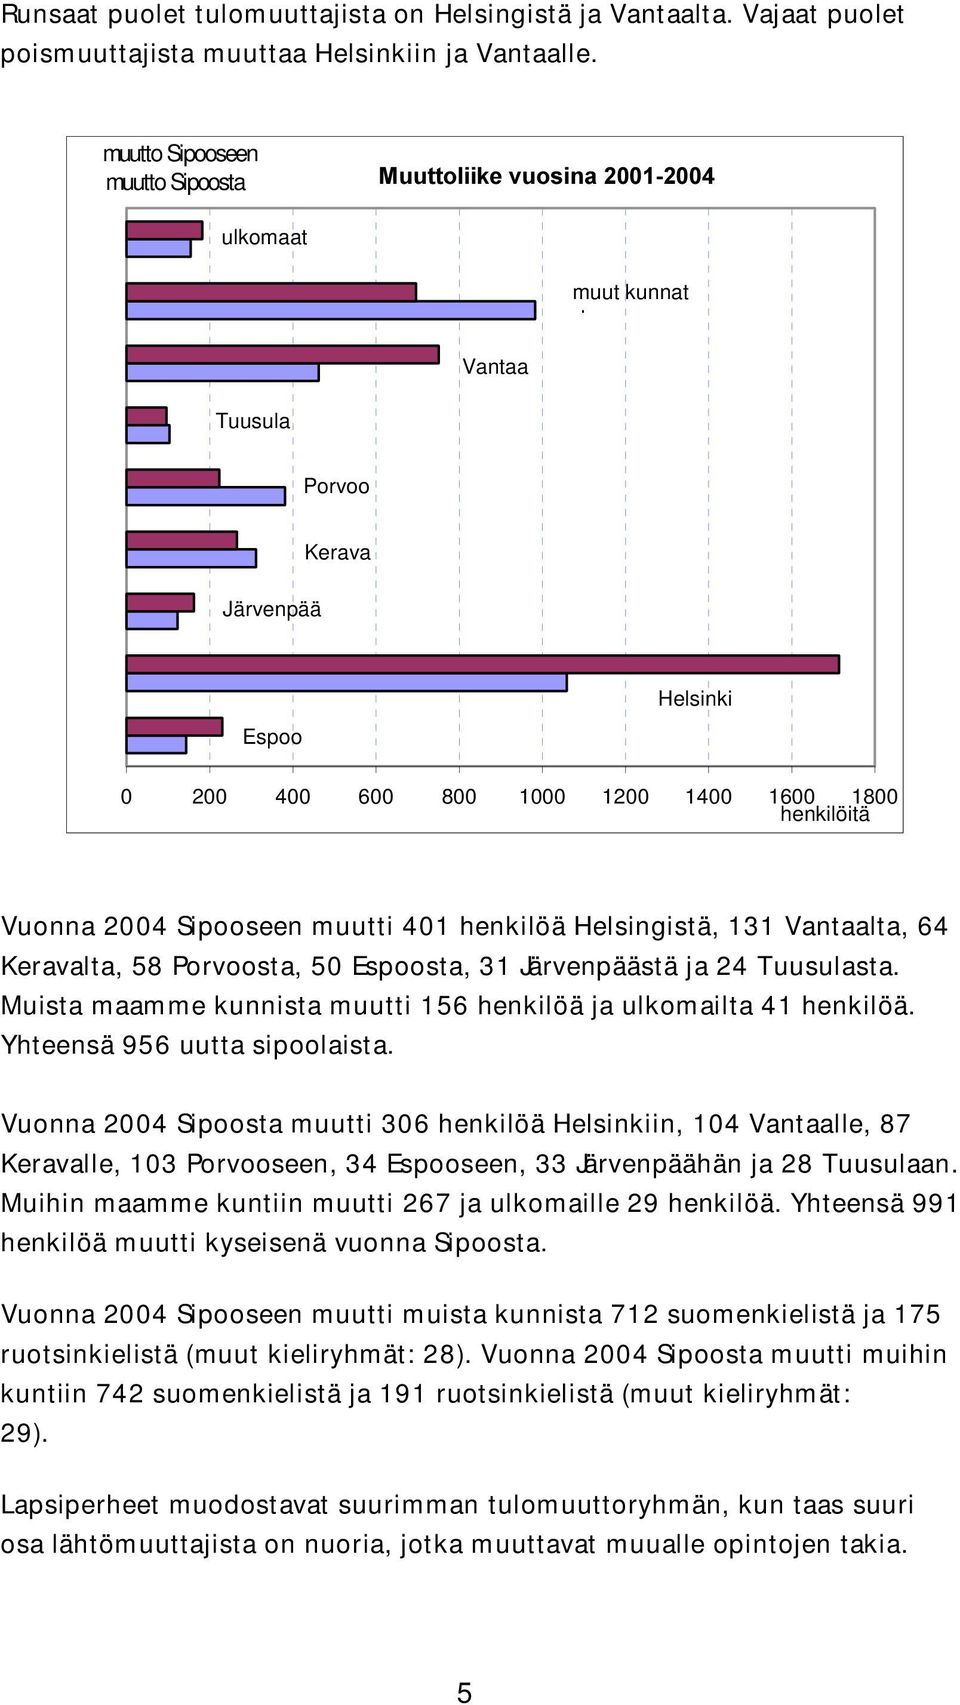 1800 henkilöitä Vuonna 2004 Sipooseen muutti 401 henkilöä Helsingistä, 131 Vantaalta, 64 Keravalta, 58 Porvoosta, 50 Espoosta, 31 Järvenpäästä ja 24 Tuusulasta.